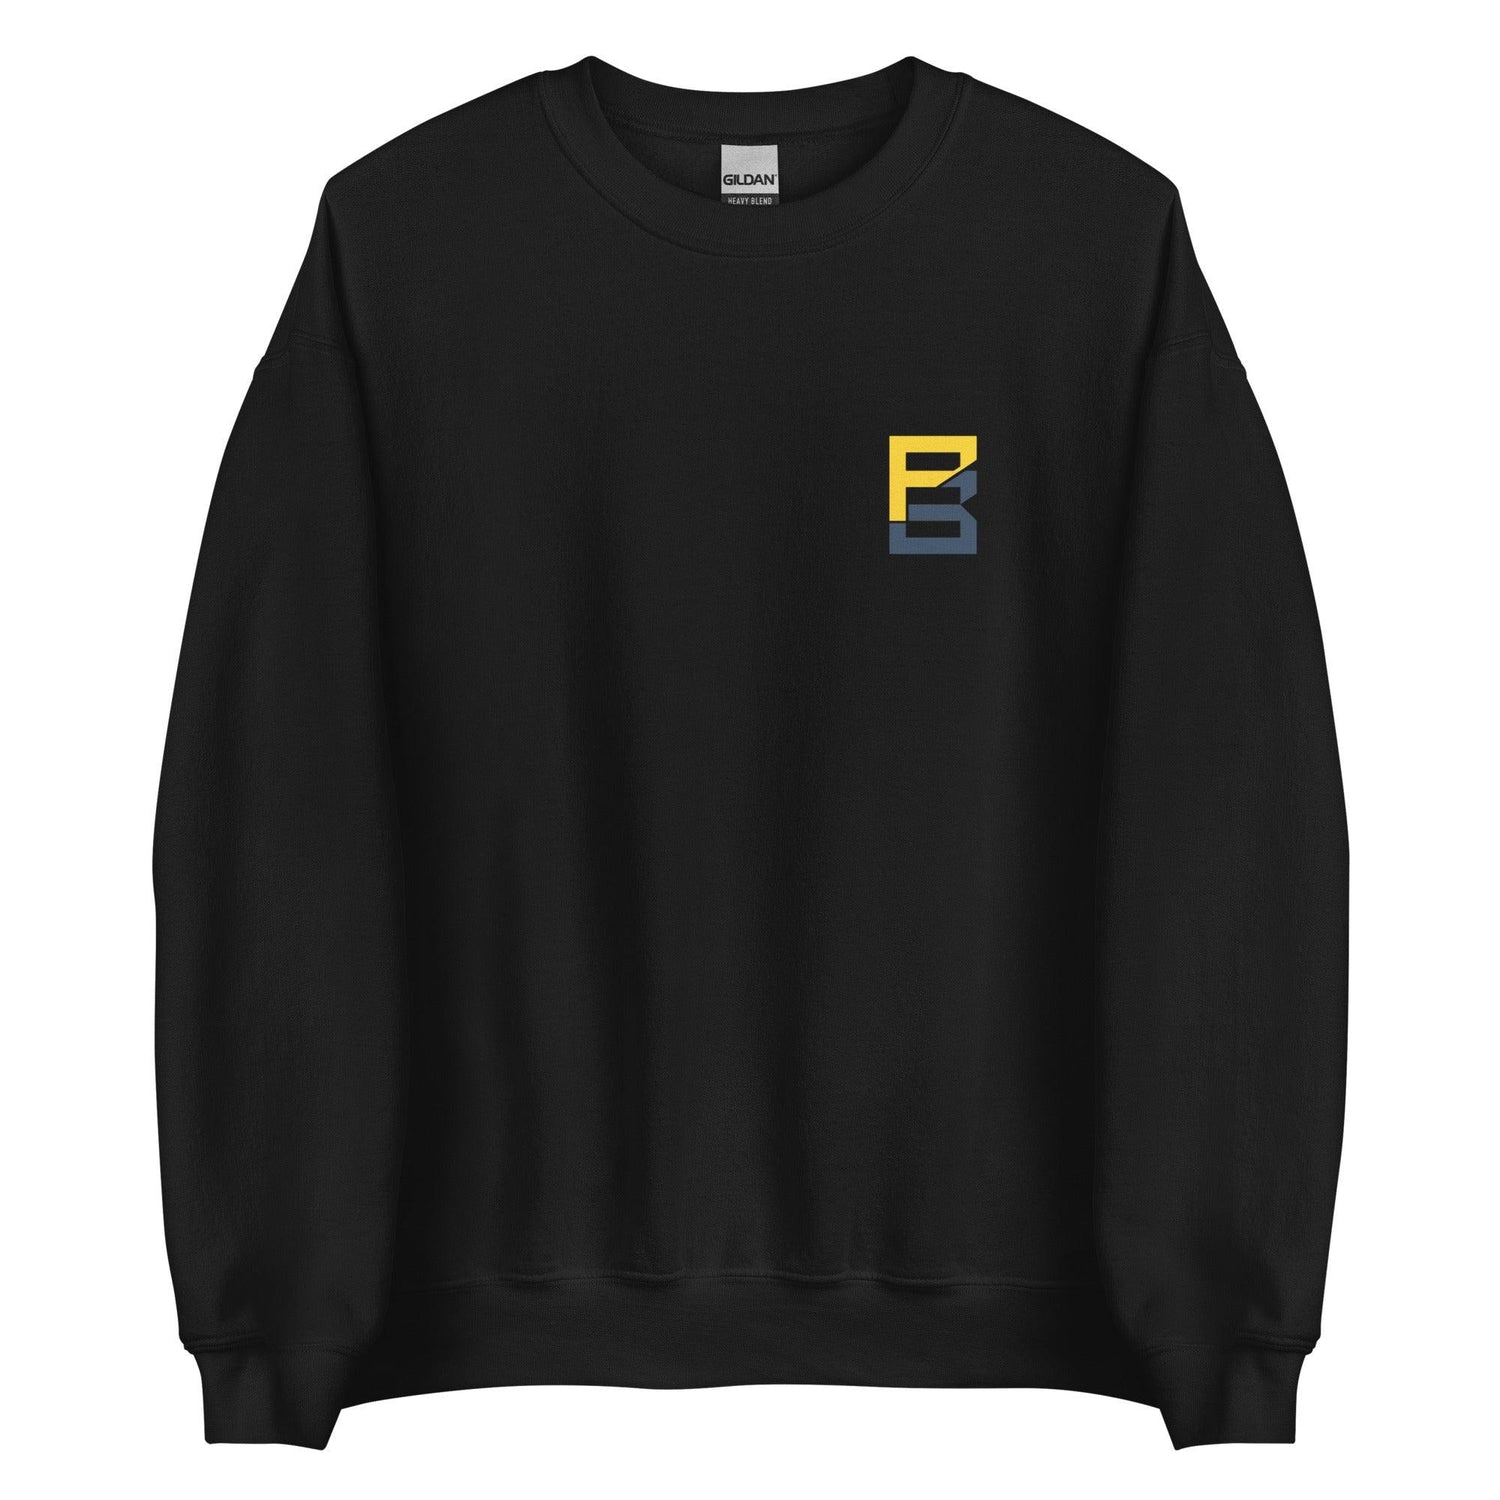 Peny Boone "Essential" Sweatshirt - Fan Arch